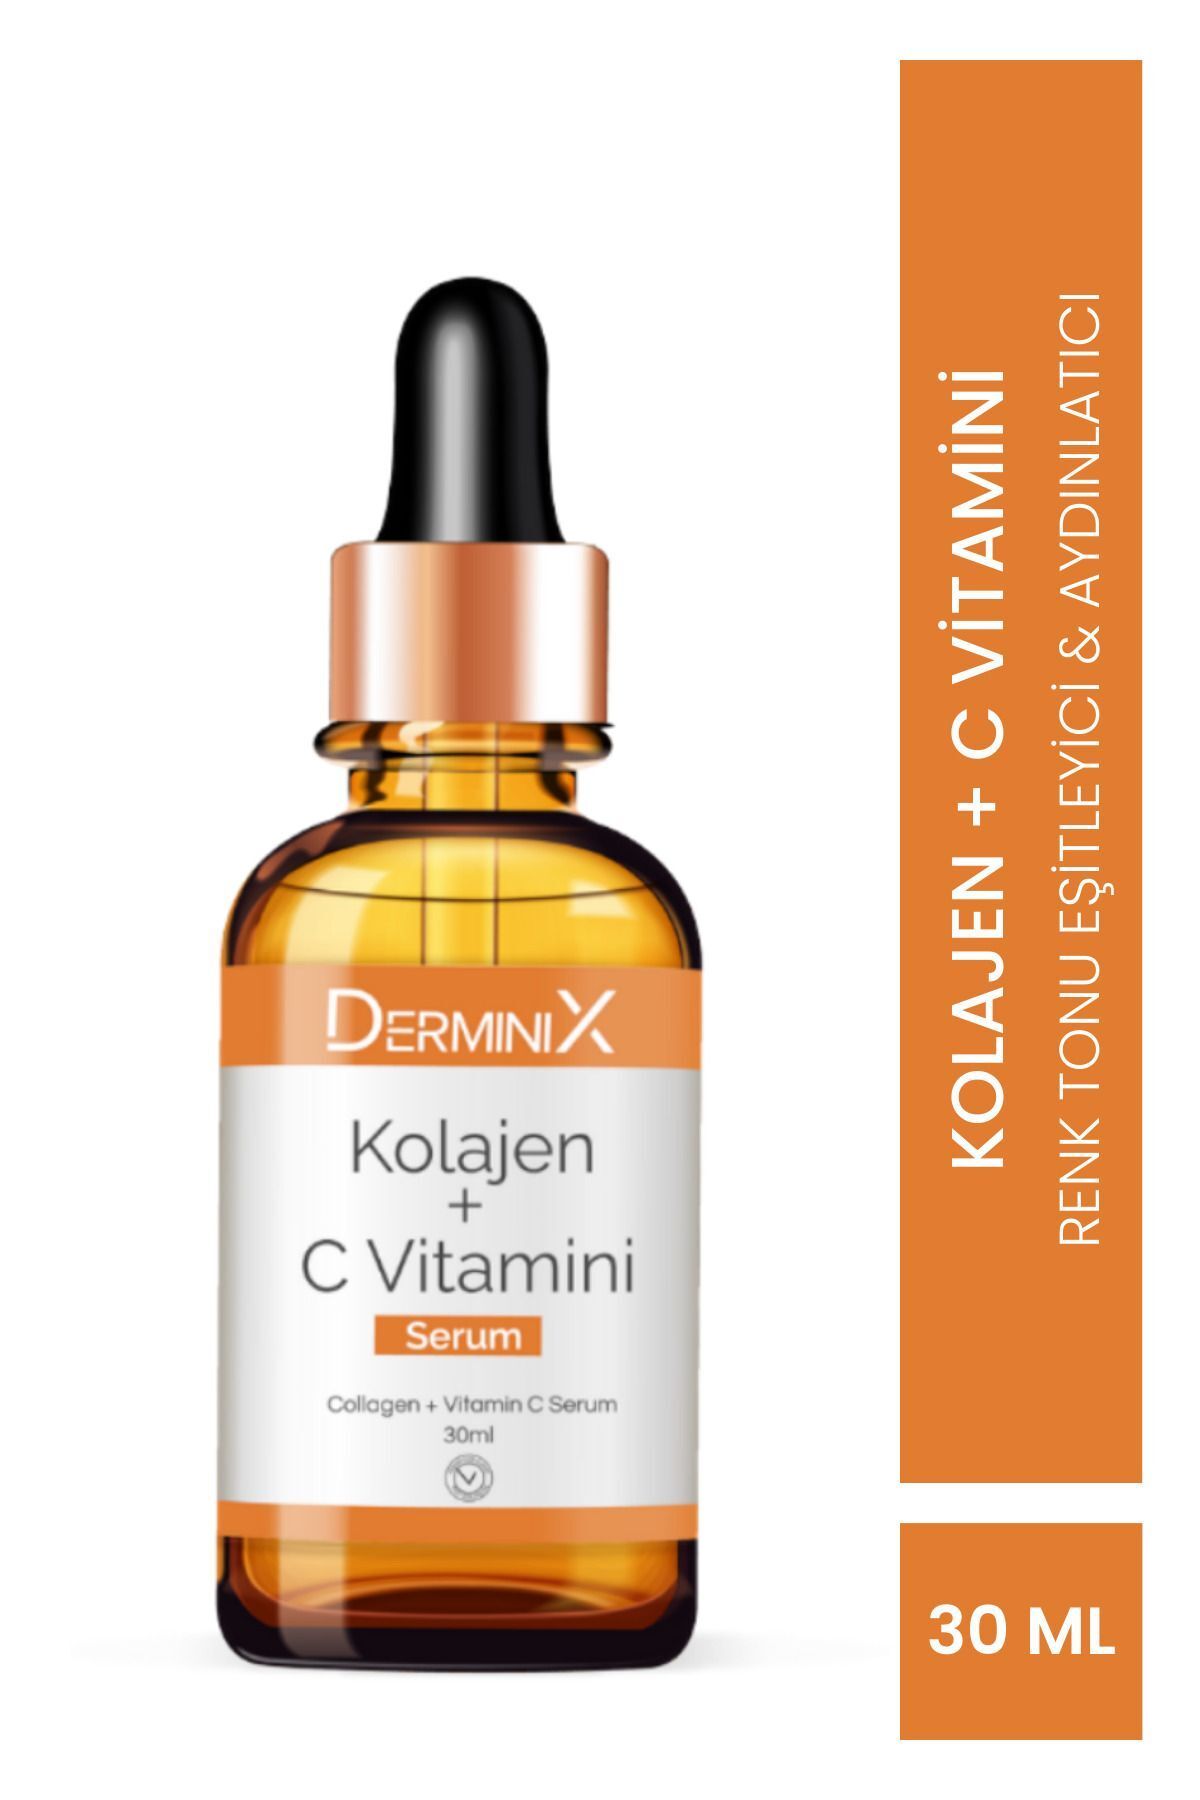 Derminix Kolajen C Vitamini Serum (COLLAGEN C VİTAMİN SERUM)